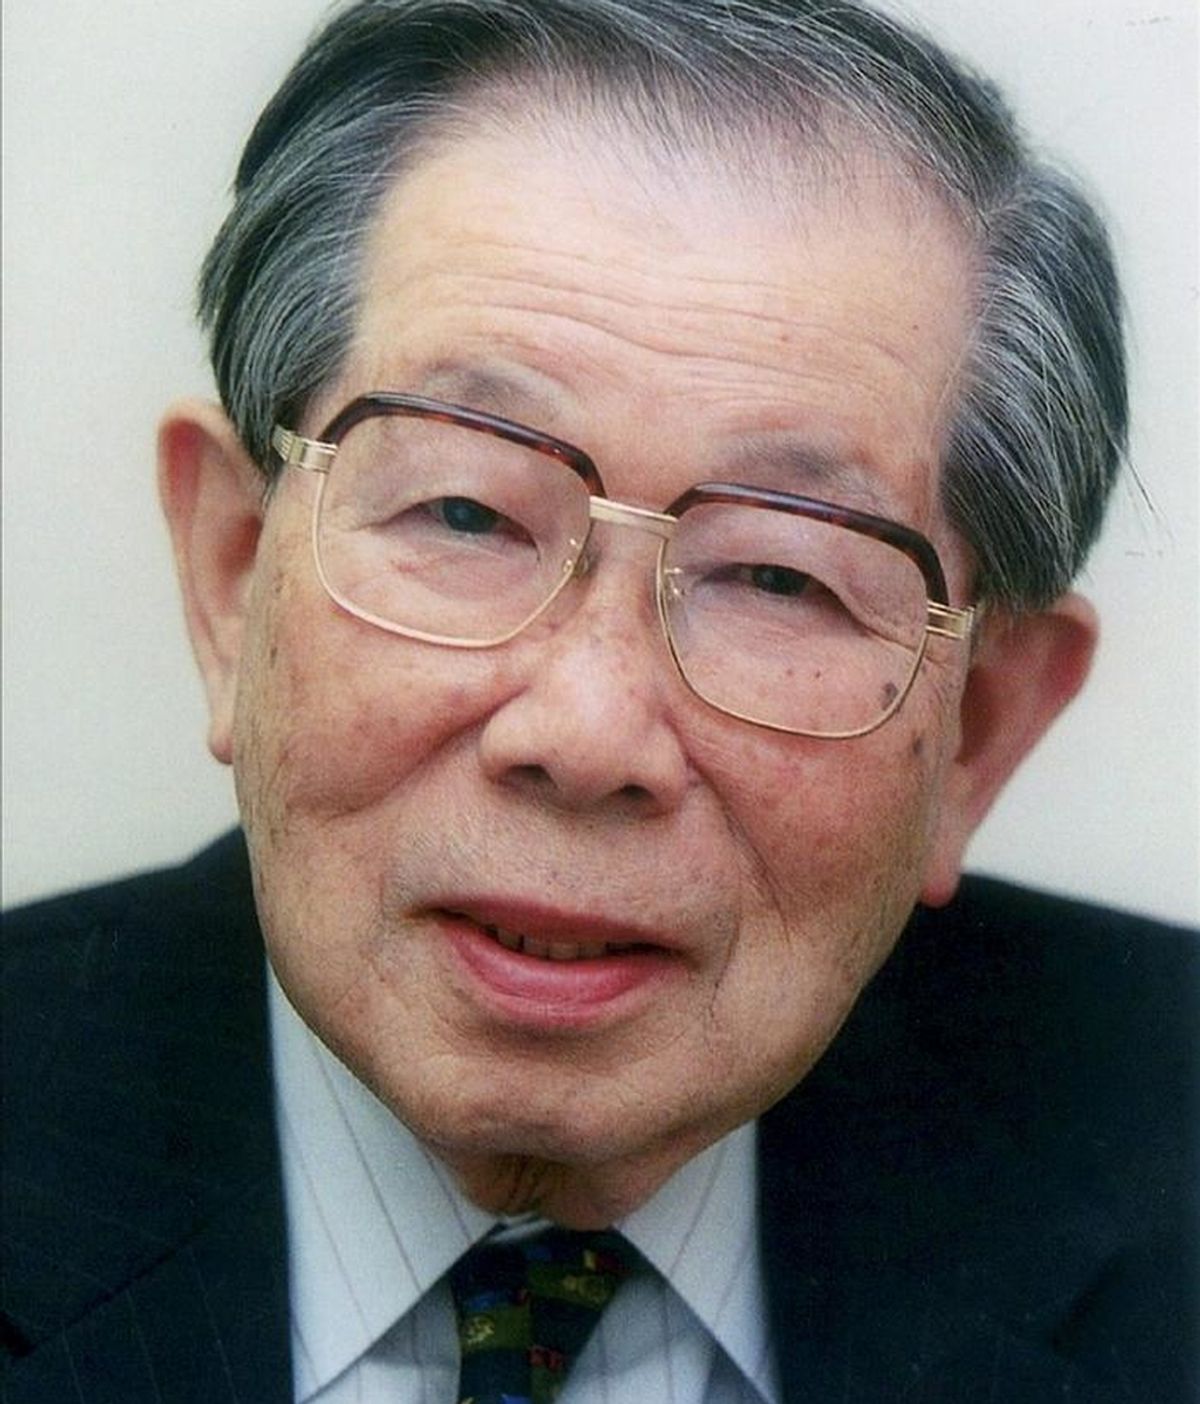 Fotografía facilitada por Shigeaki Hinohara de él mismo, posiblemente el único médico del mundo que sigue en activo con 99 años. Hinohara, uno de los médicos personales de la emperatriz Michiko, empezó a trabajar en 1941 en el departamento de medicina interna del Hospital Internacional San Luke de Tokio, donde desarrolló su carrera hasta que cumplió 86 años, en 1998. EFE